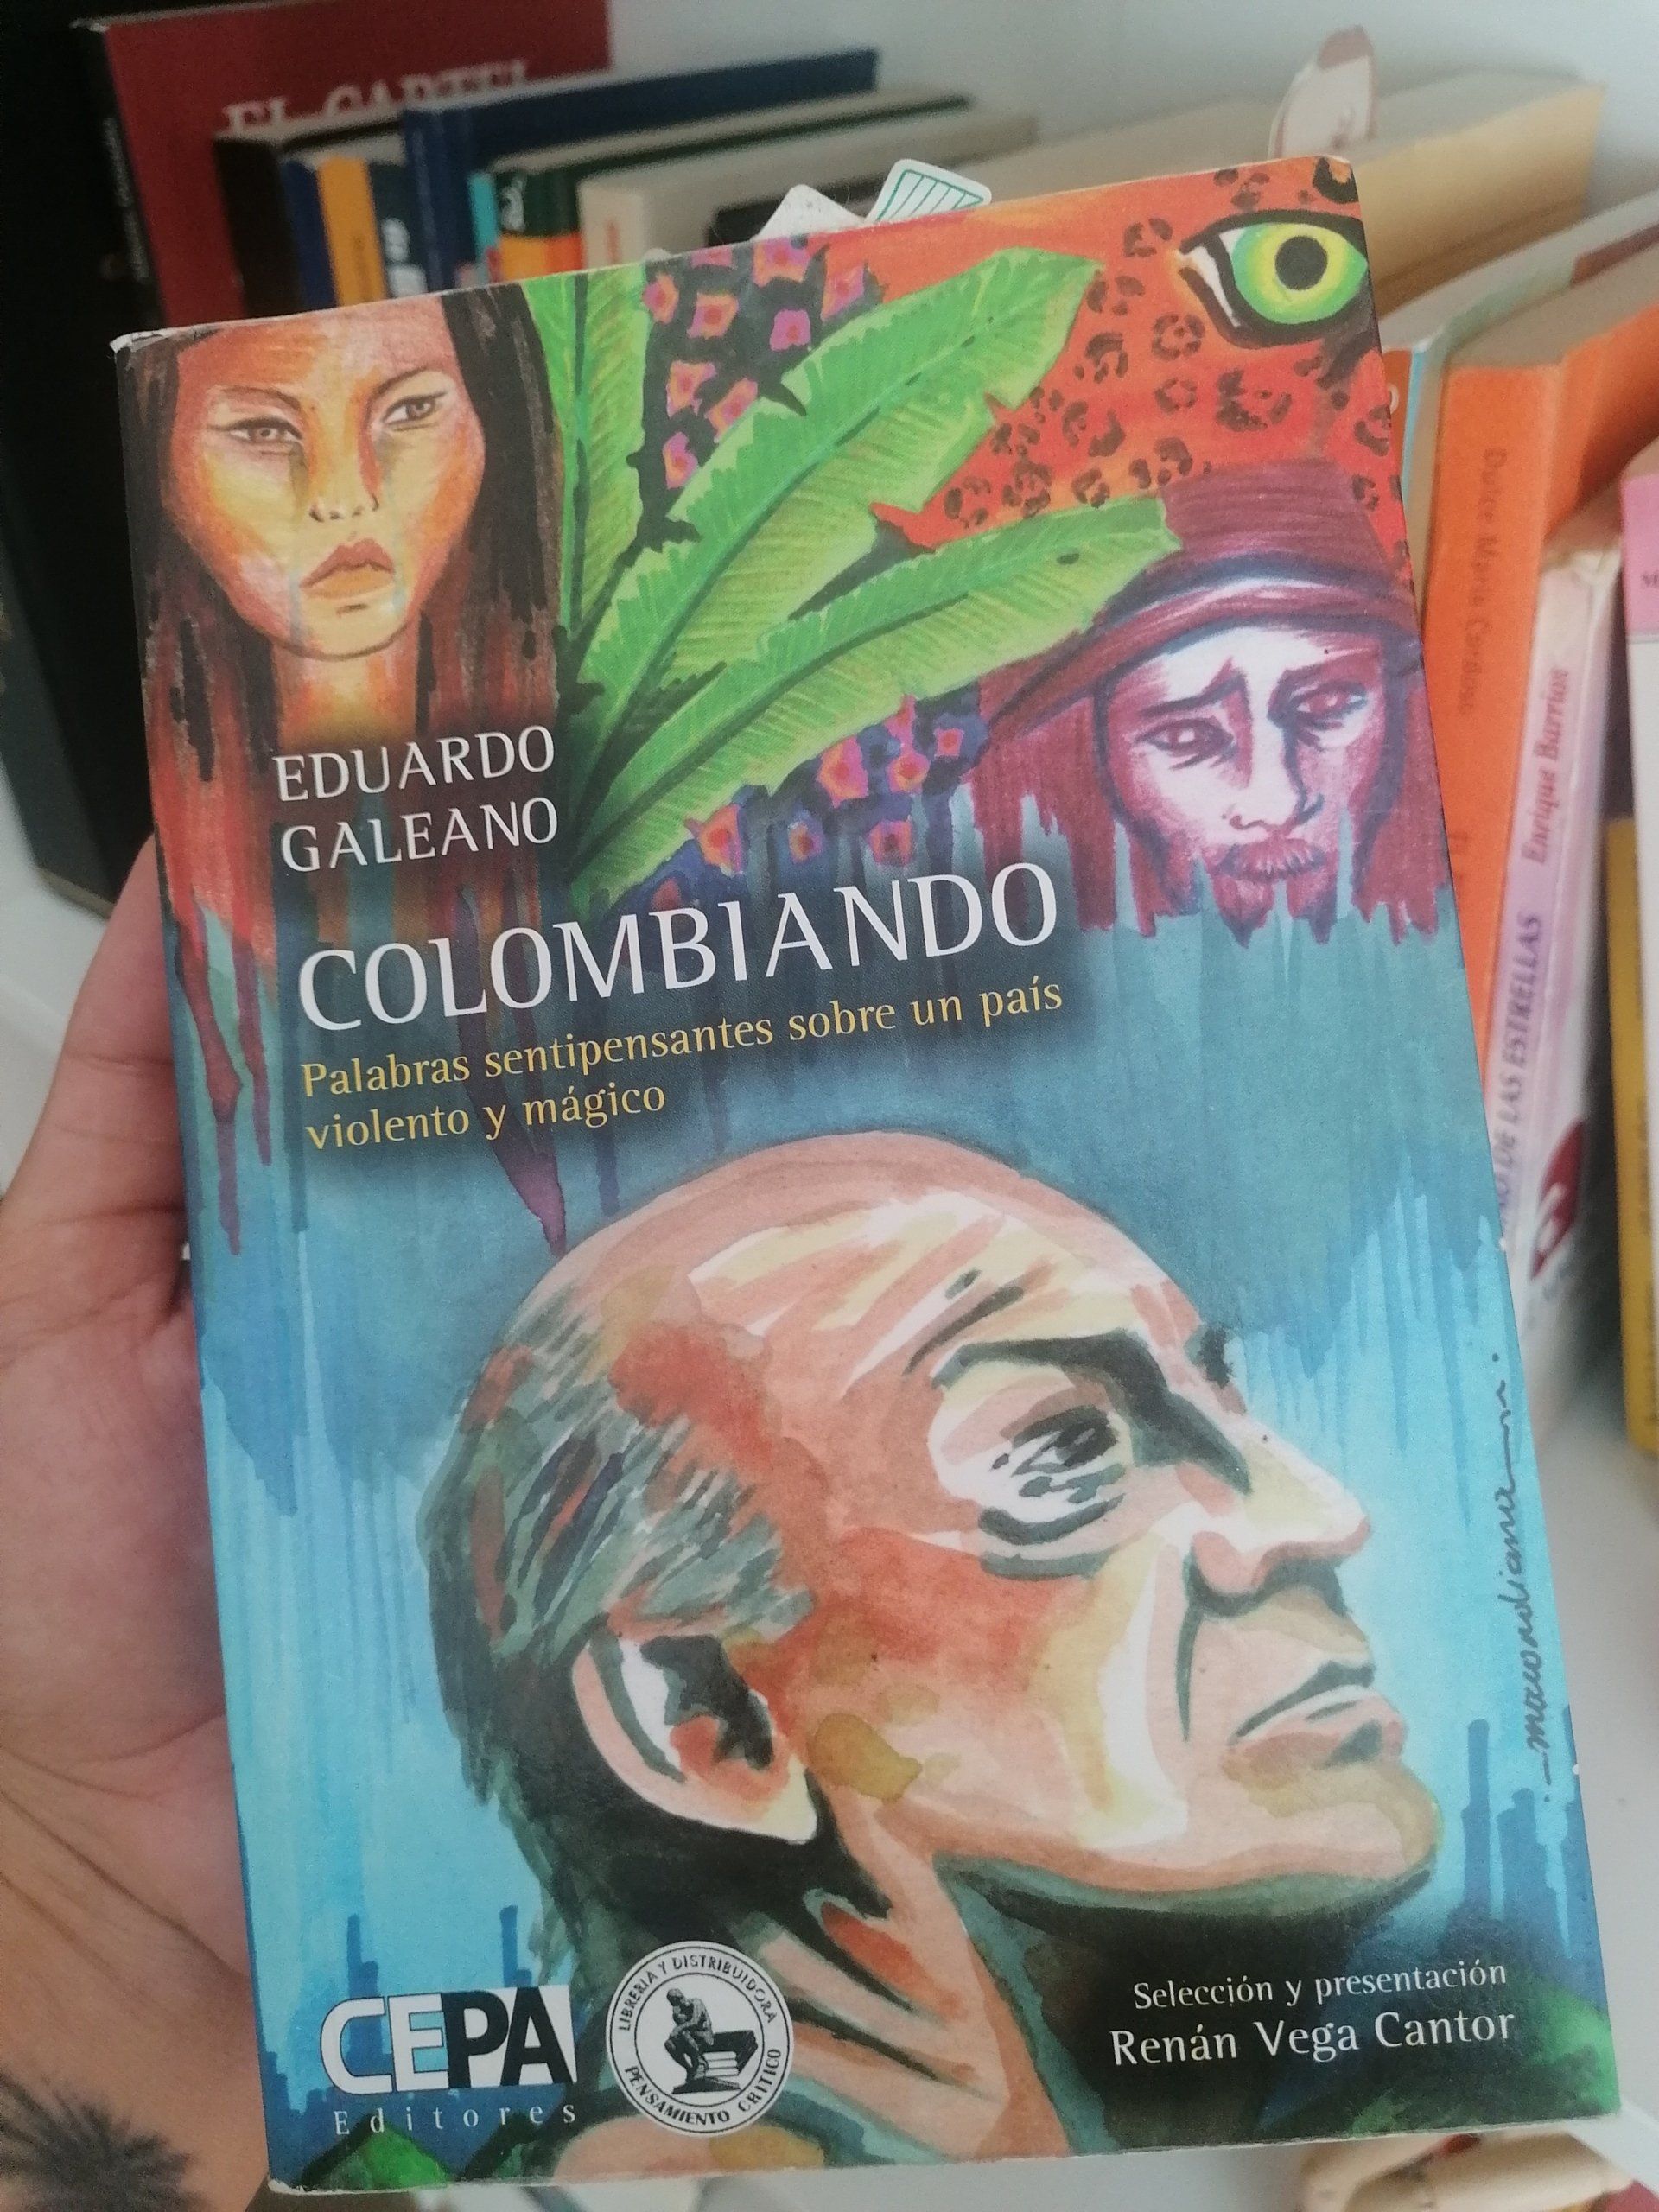 Reseña del libro: Colombiando, palabras sentipensantes sobre un país violento y mágico.